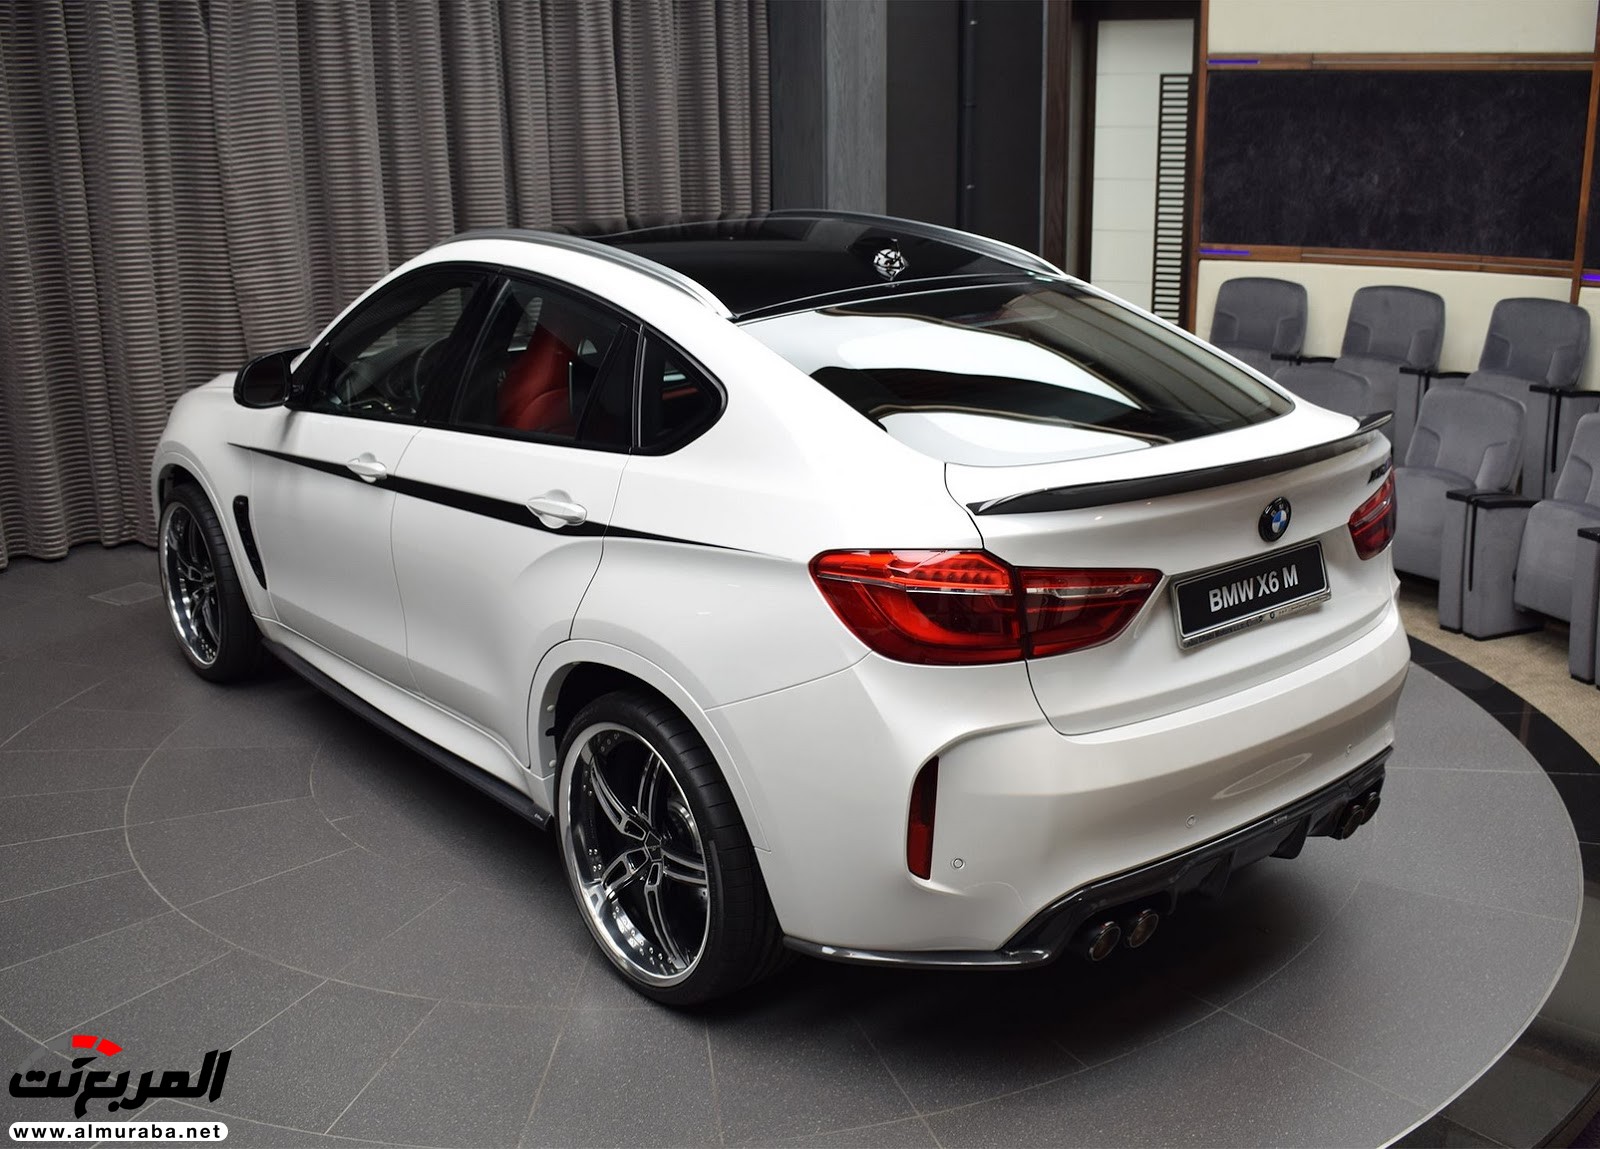 "بي إم دبليو" X6 M عالية الأداء معدّلة بتصاميم 3D معروضة بأبو ظبي BMW 7